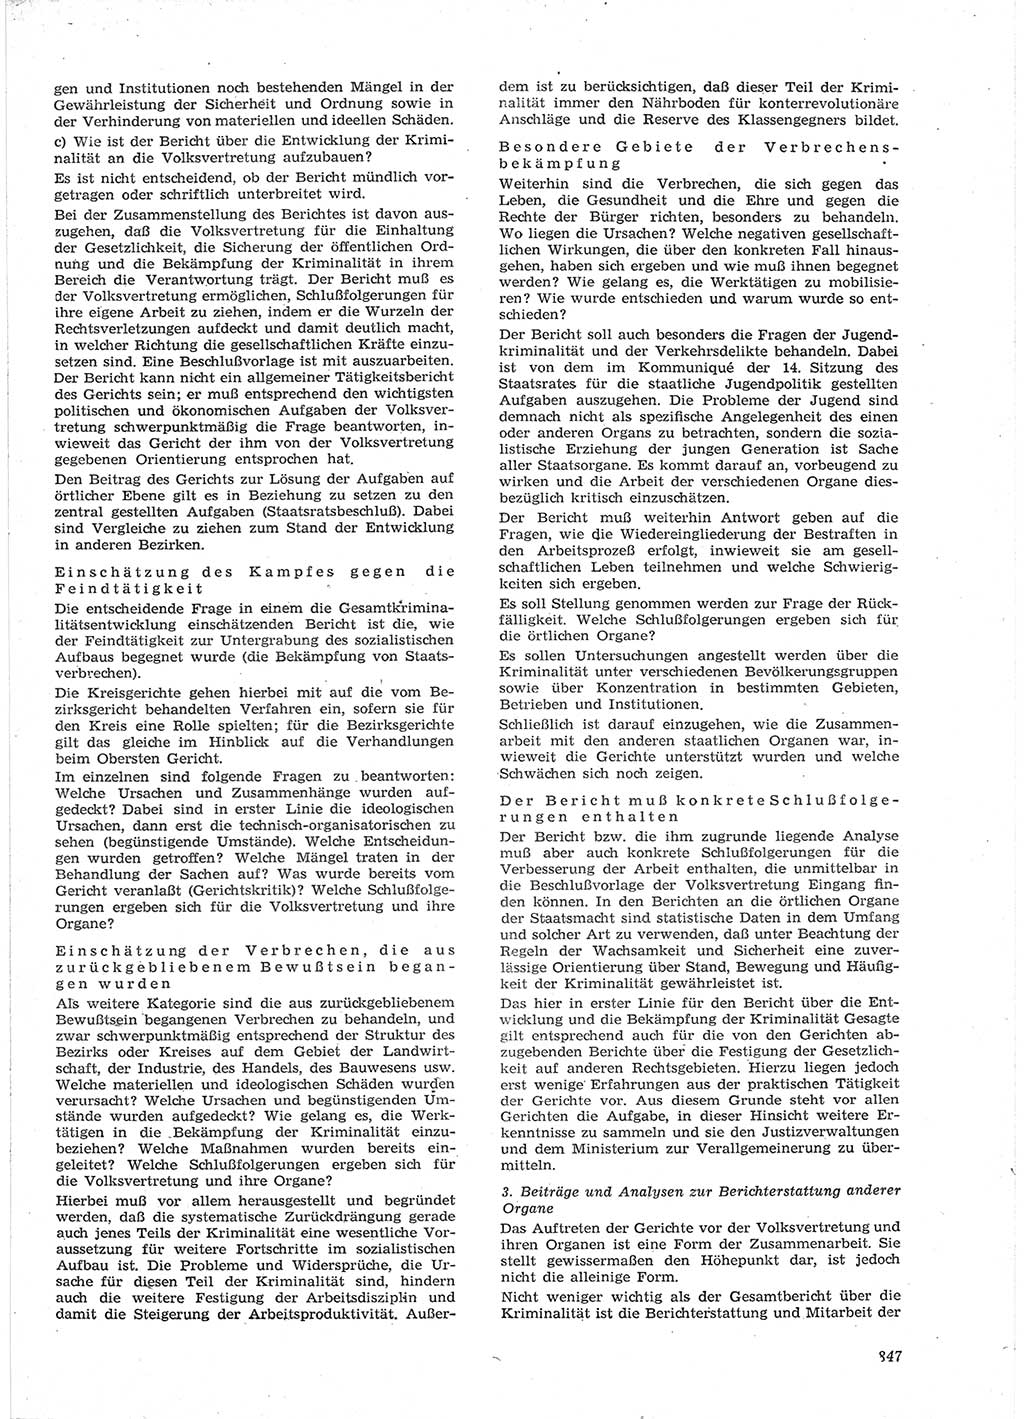 Neue Justiz (NJ), Zeitschrift für Recht und Rechtswissenschaft [Deutsche Demokratische Republik (DDR)], 15. Jahrgang 1961, Seite 847 (NJ DDR 1961, S. 847)